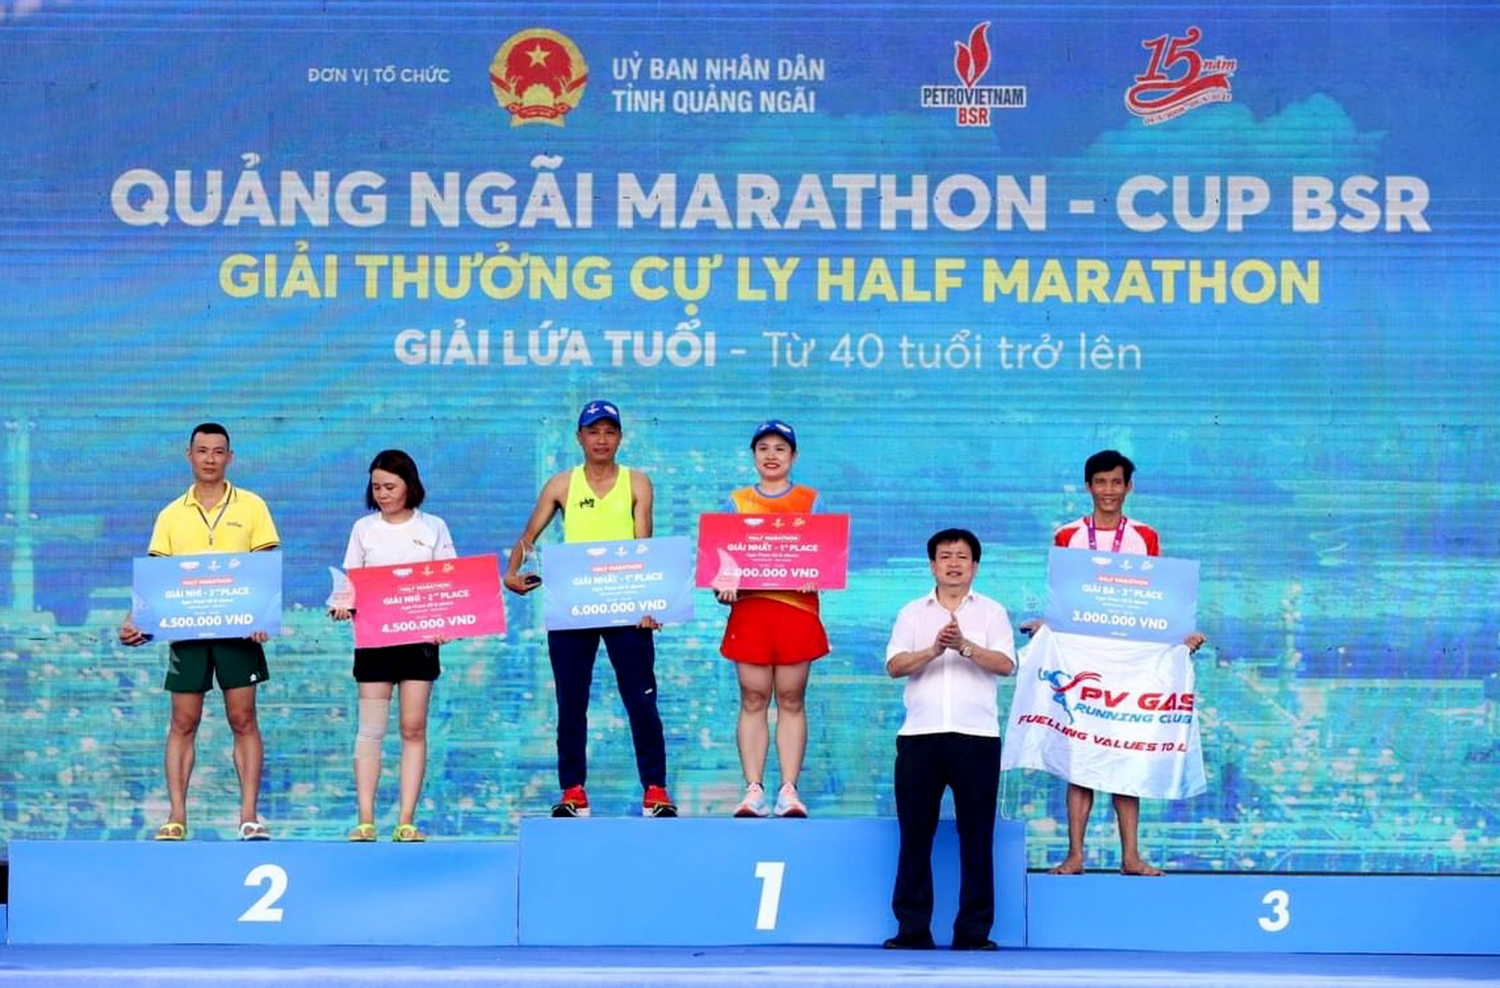 VĐV Trần Văn Thuật - KVT đạt giải Ba nam ở cự ly 21 km - nhóm tuổi trên 40